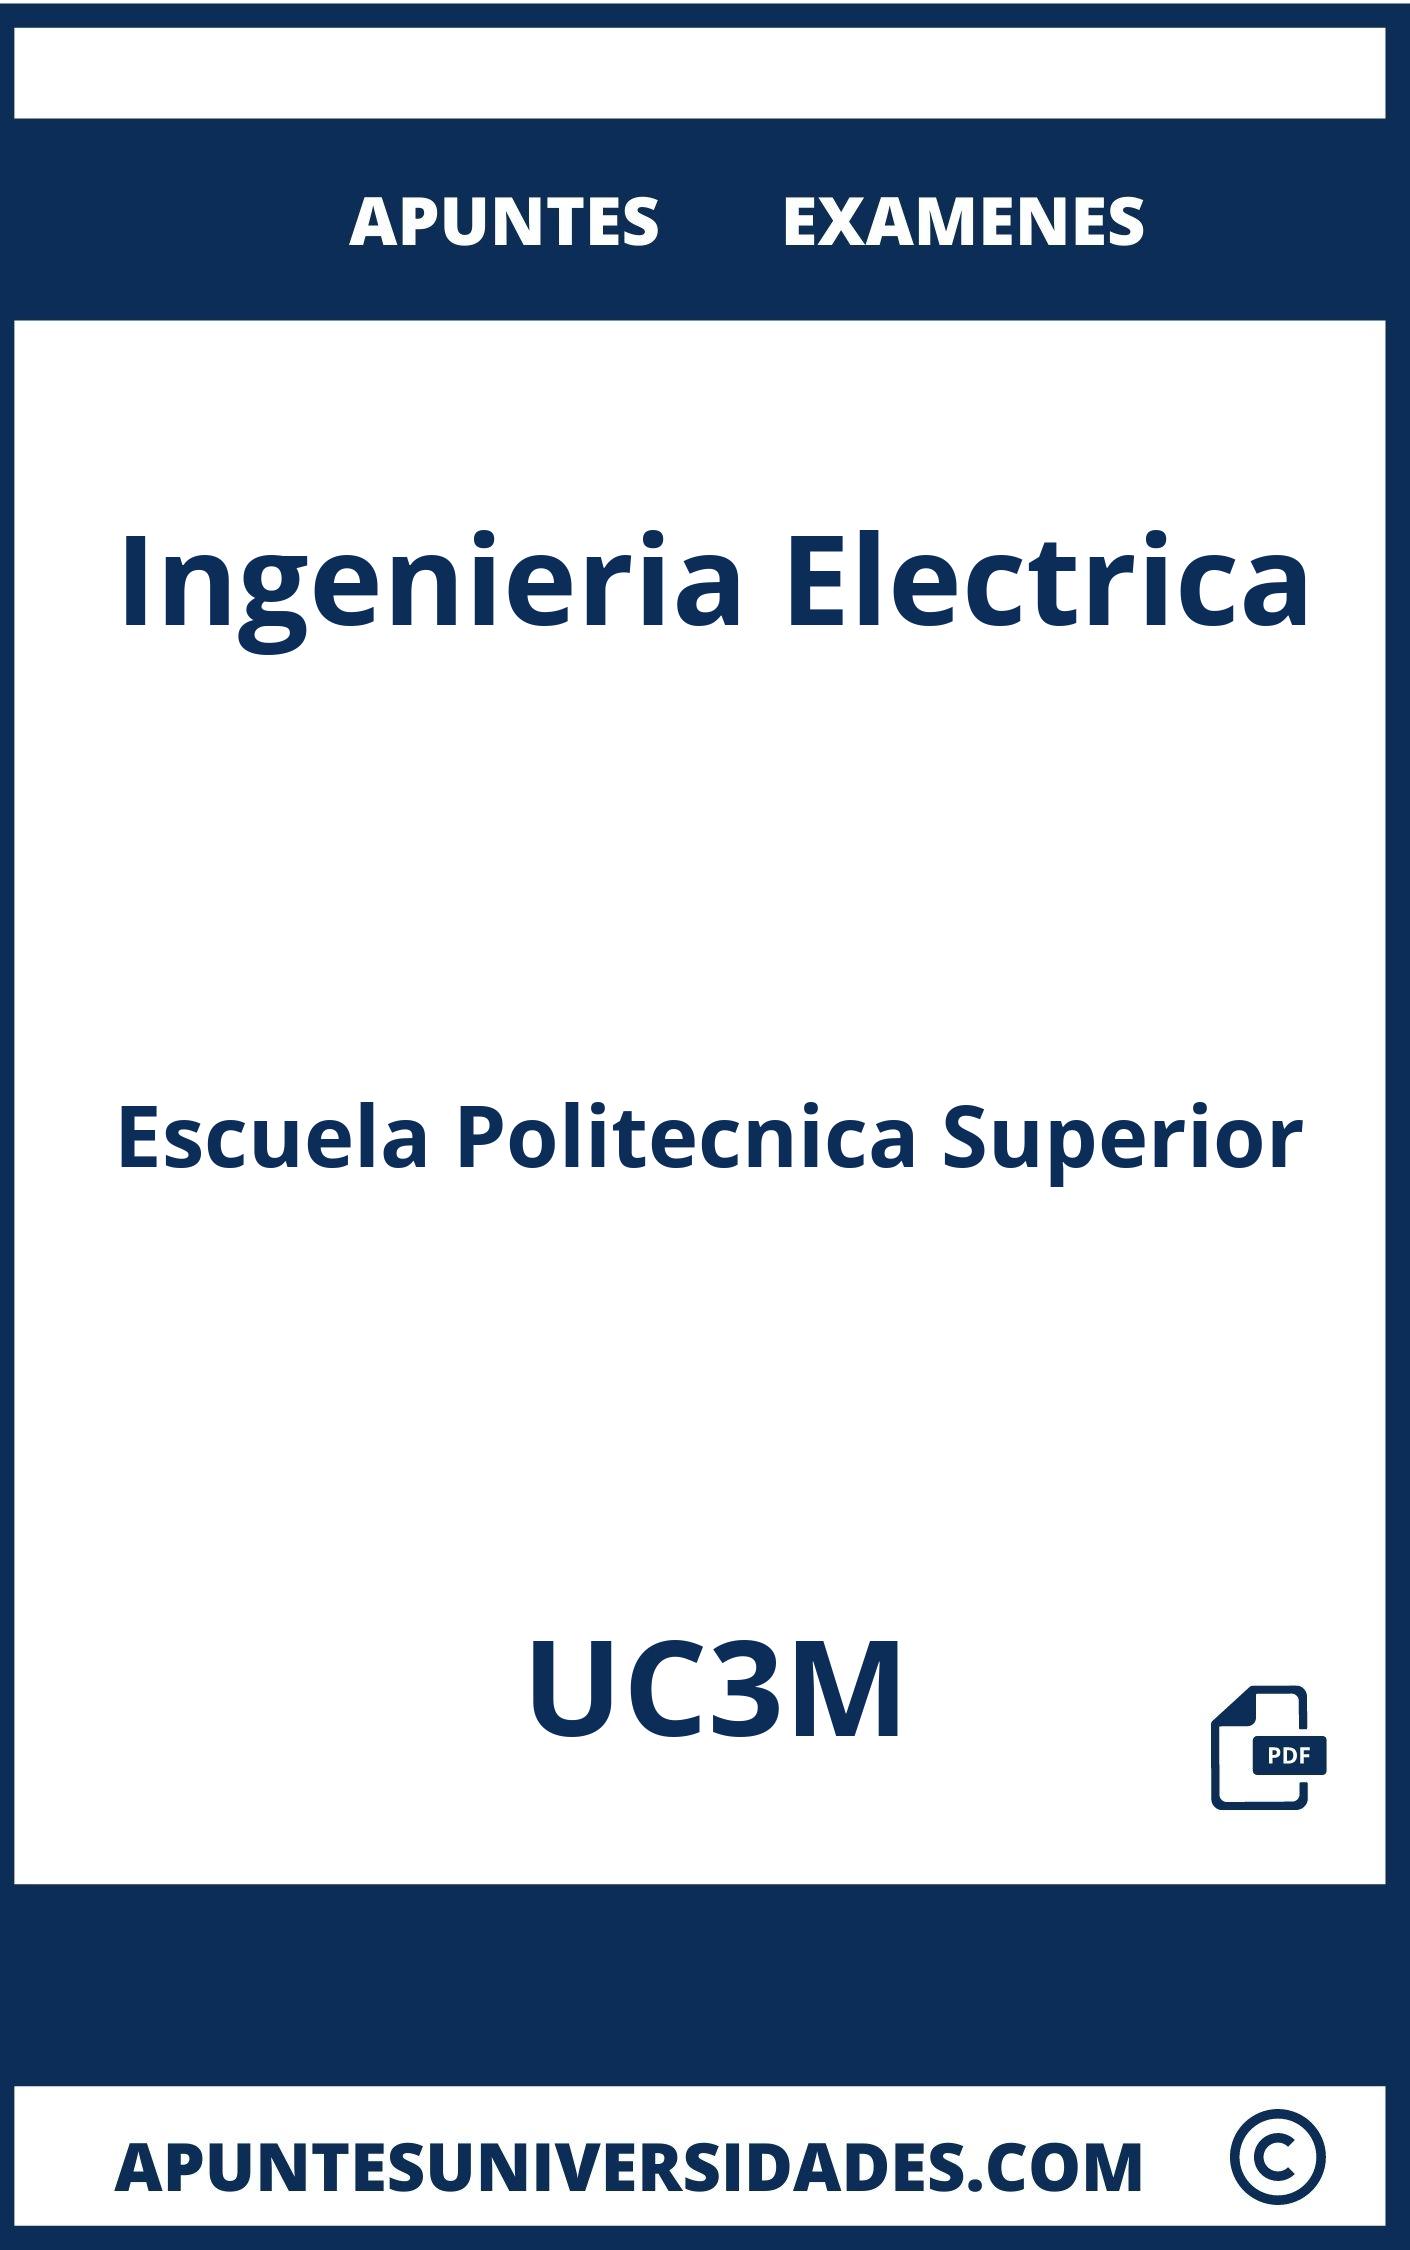 Apuntes y Examenes de Ingenieria Electrica UC3M